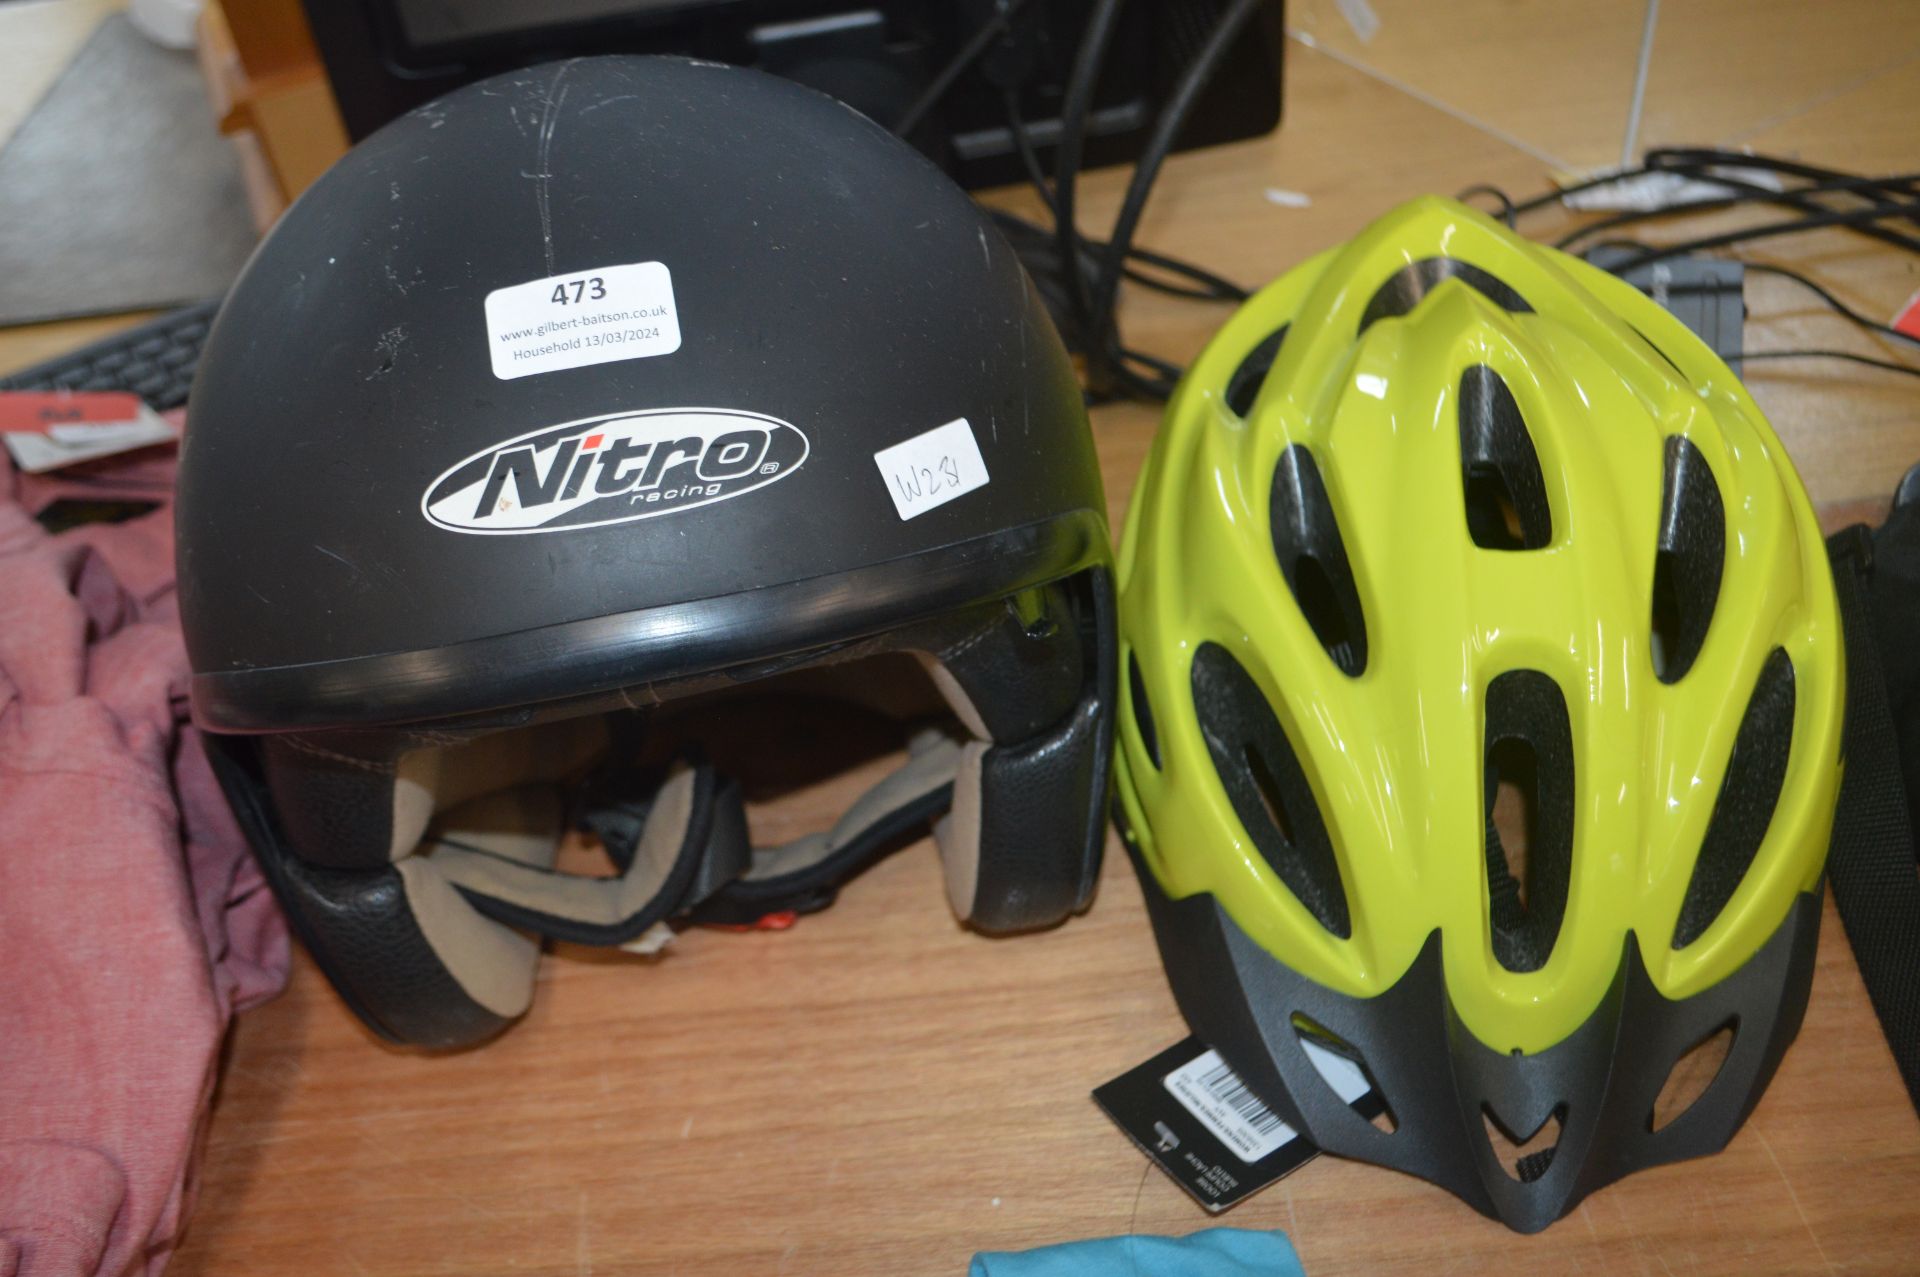 Nitro Racing Bike Helmet, and a Cycle Helmet